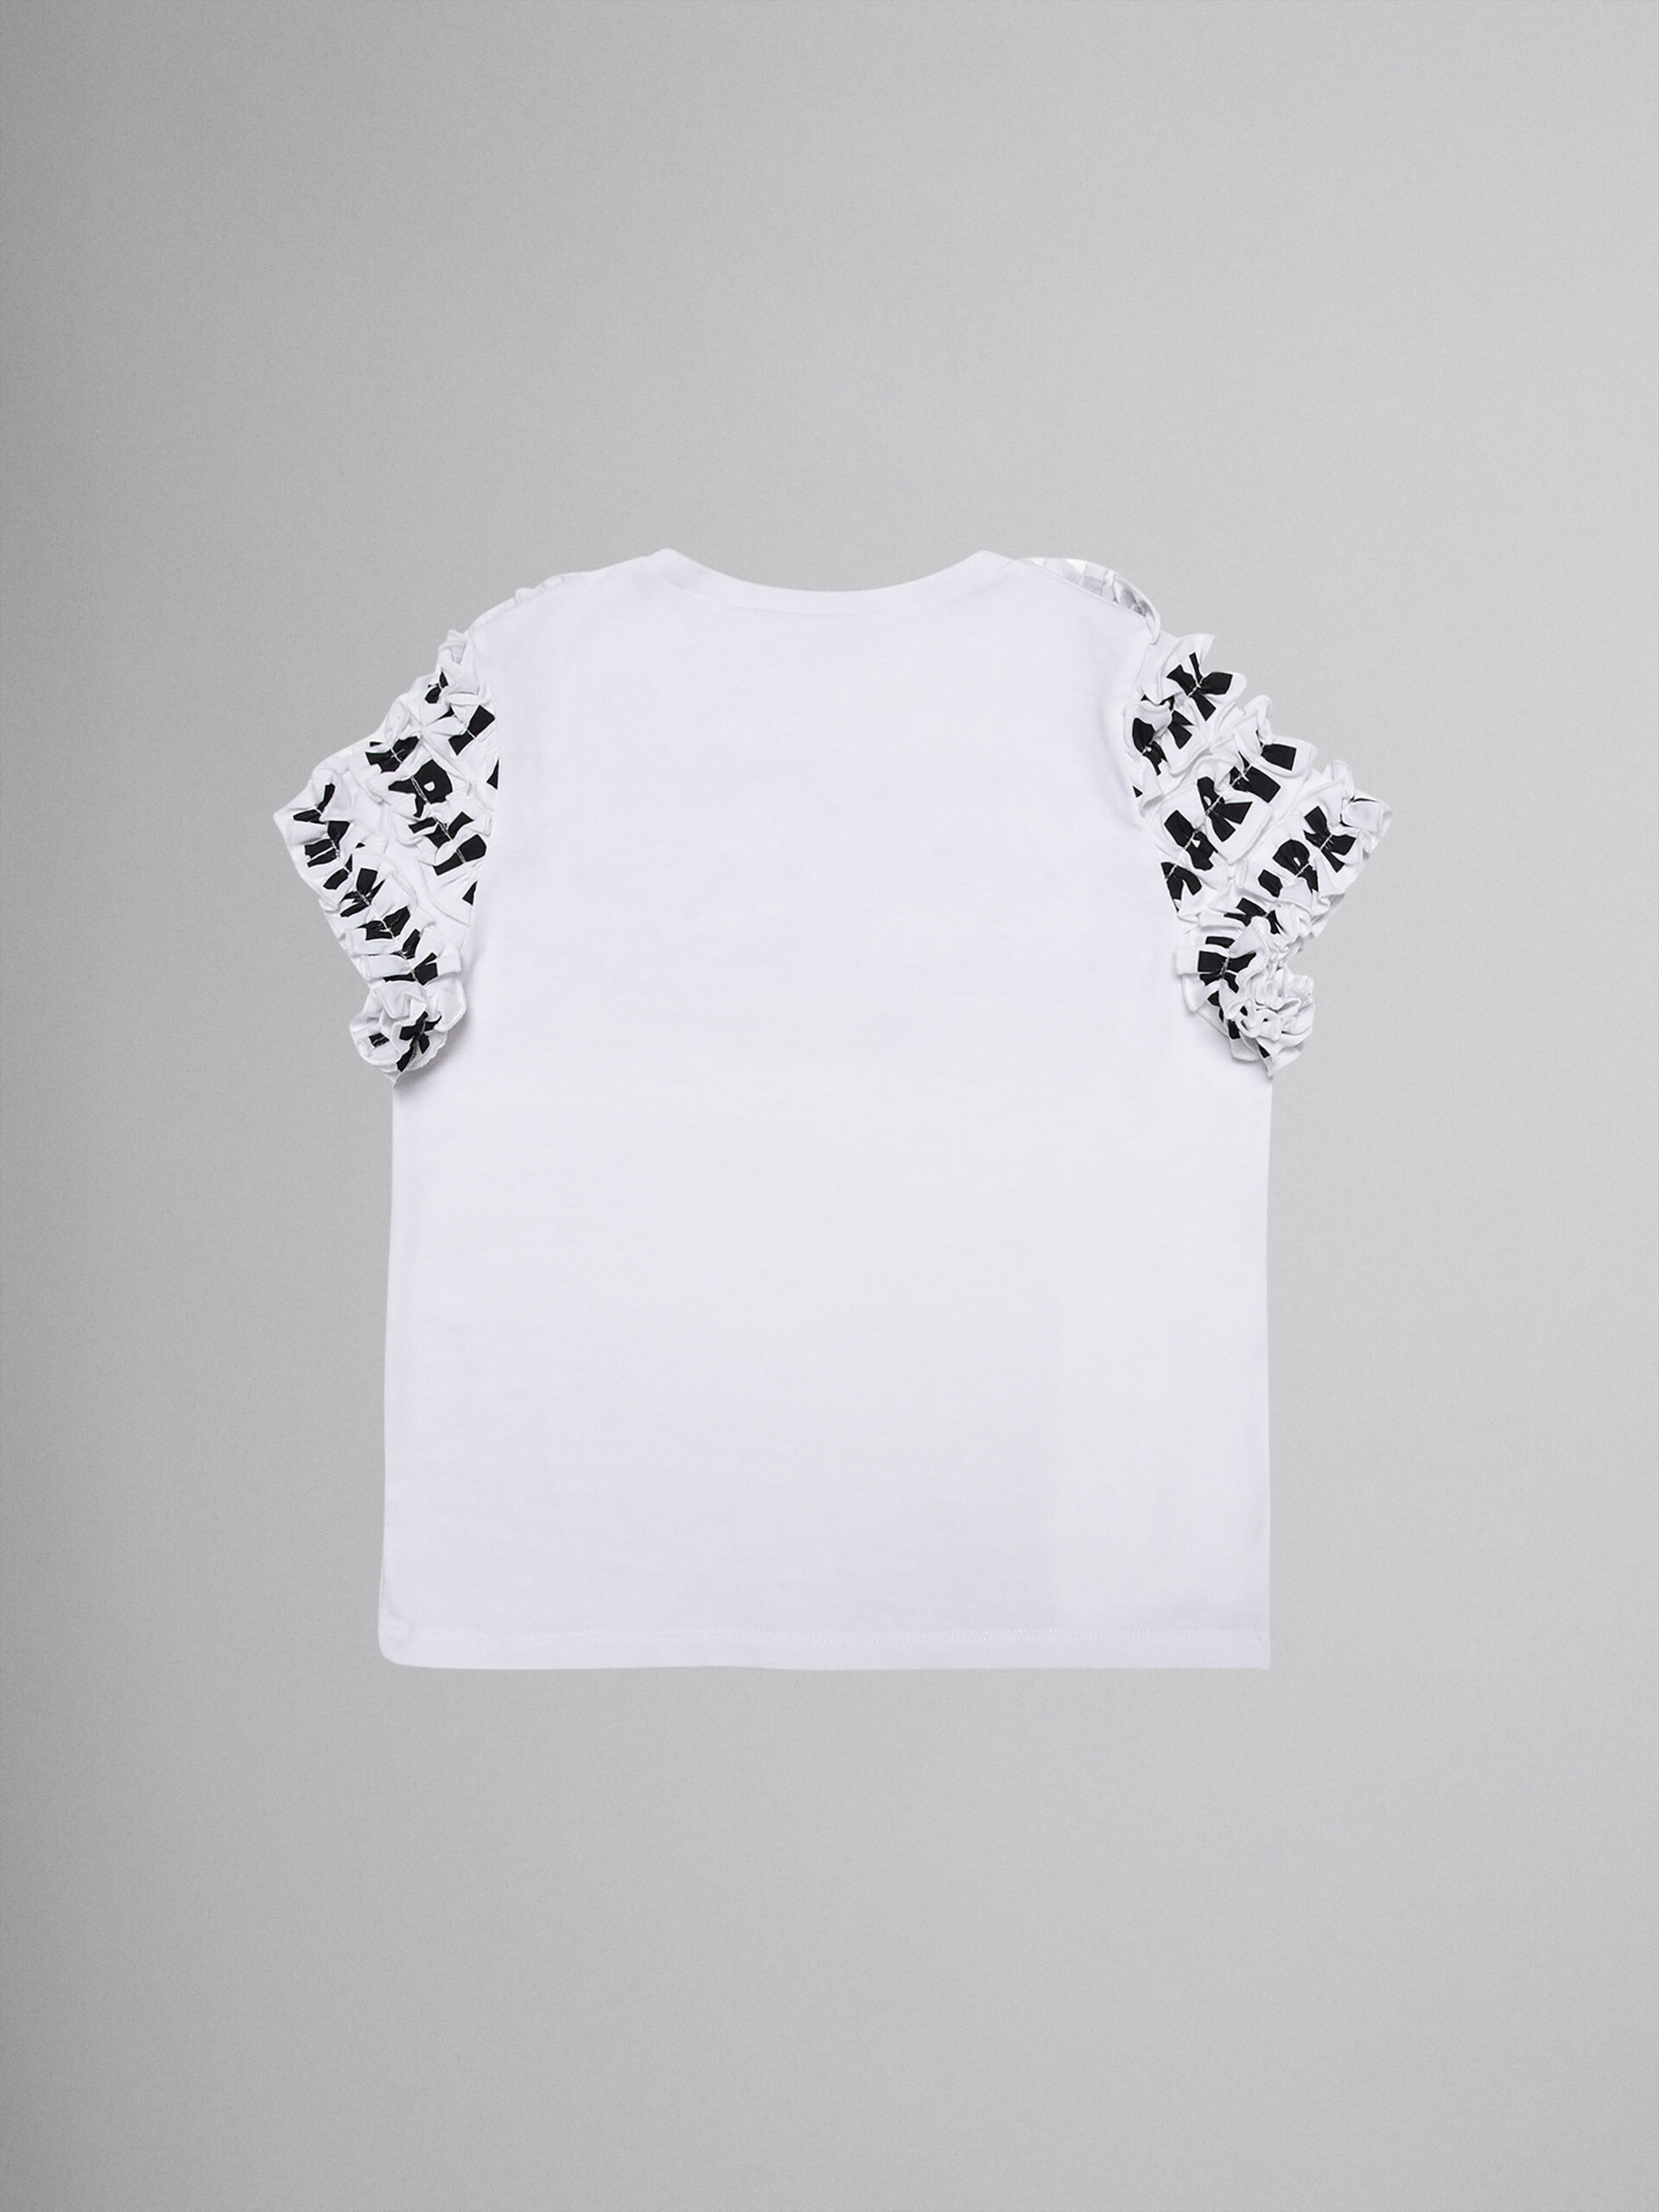 화이트 스트레치 저지 러플 티셔츠 - T-shirts - Image 2